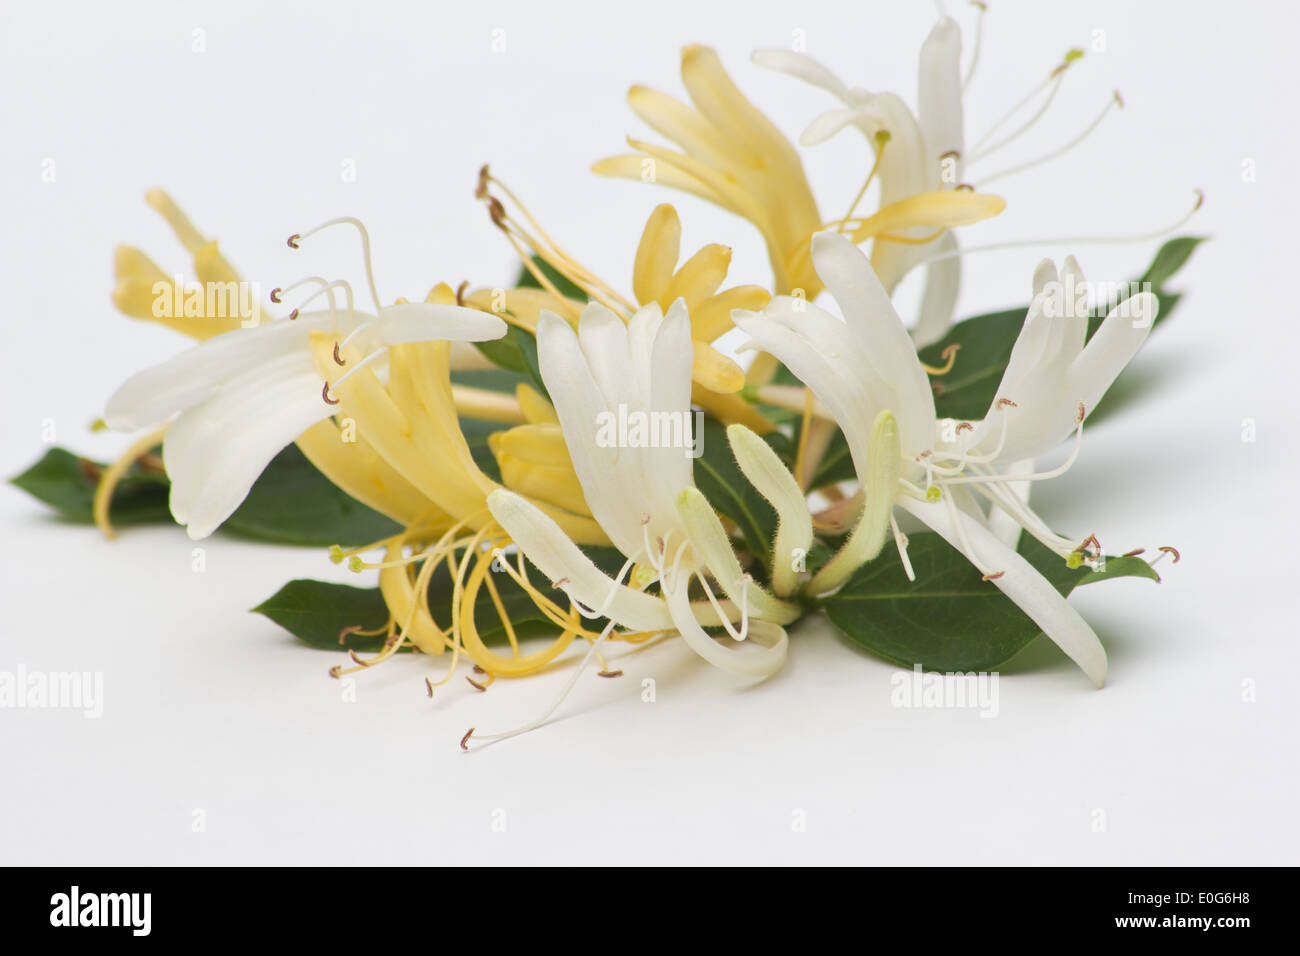 Japanese honeysuckle (Lonicera japonica) on white background Stock Photo